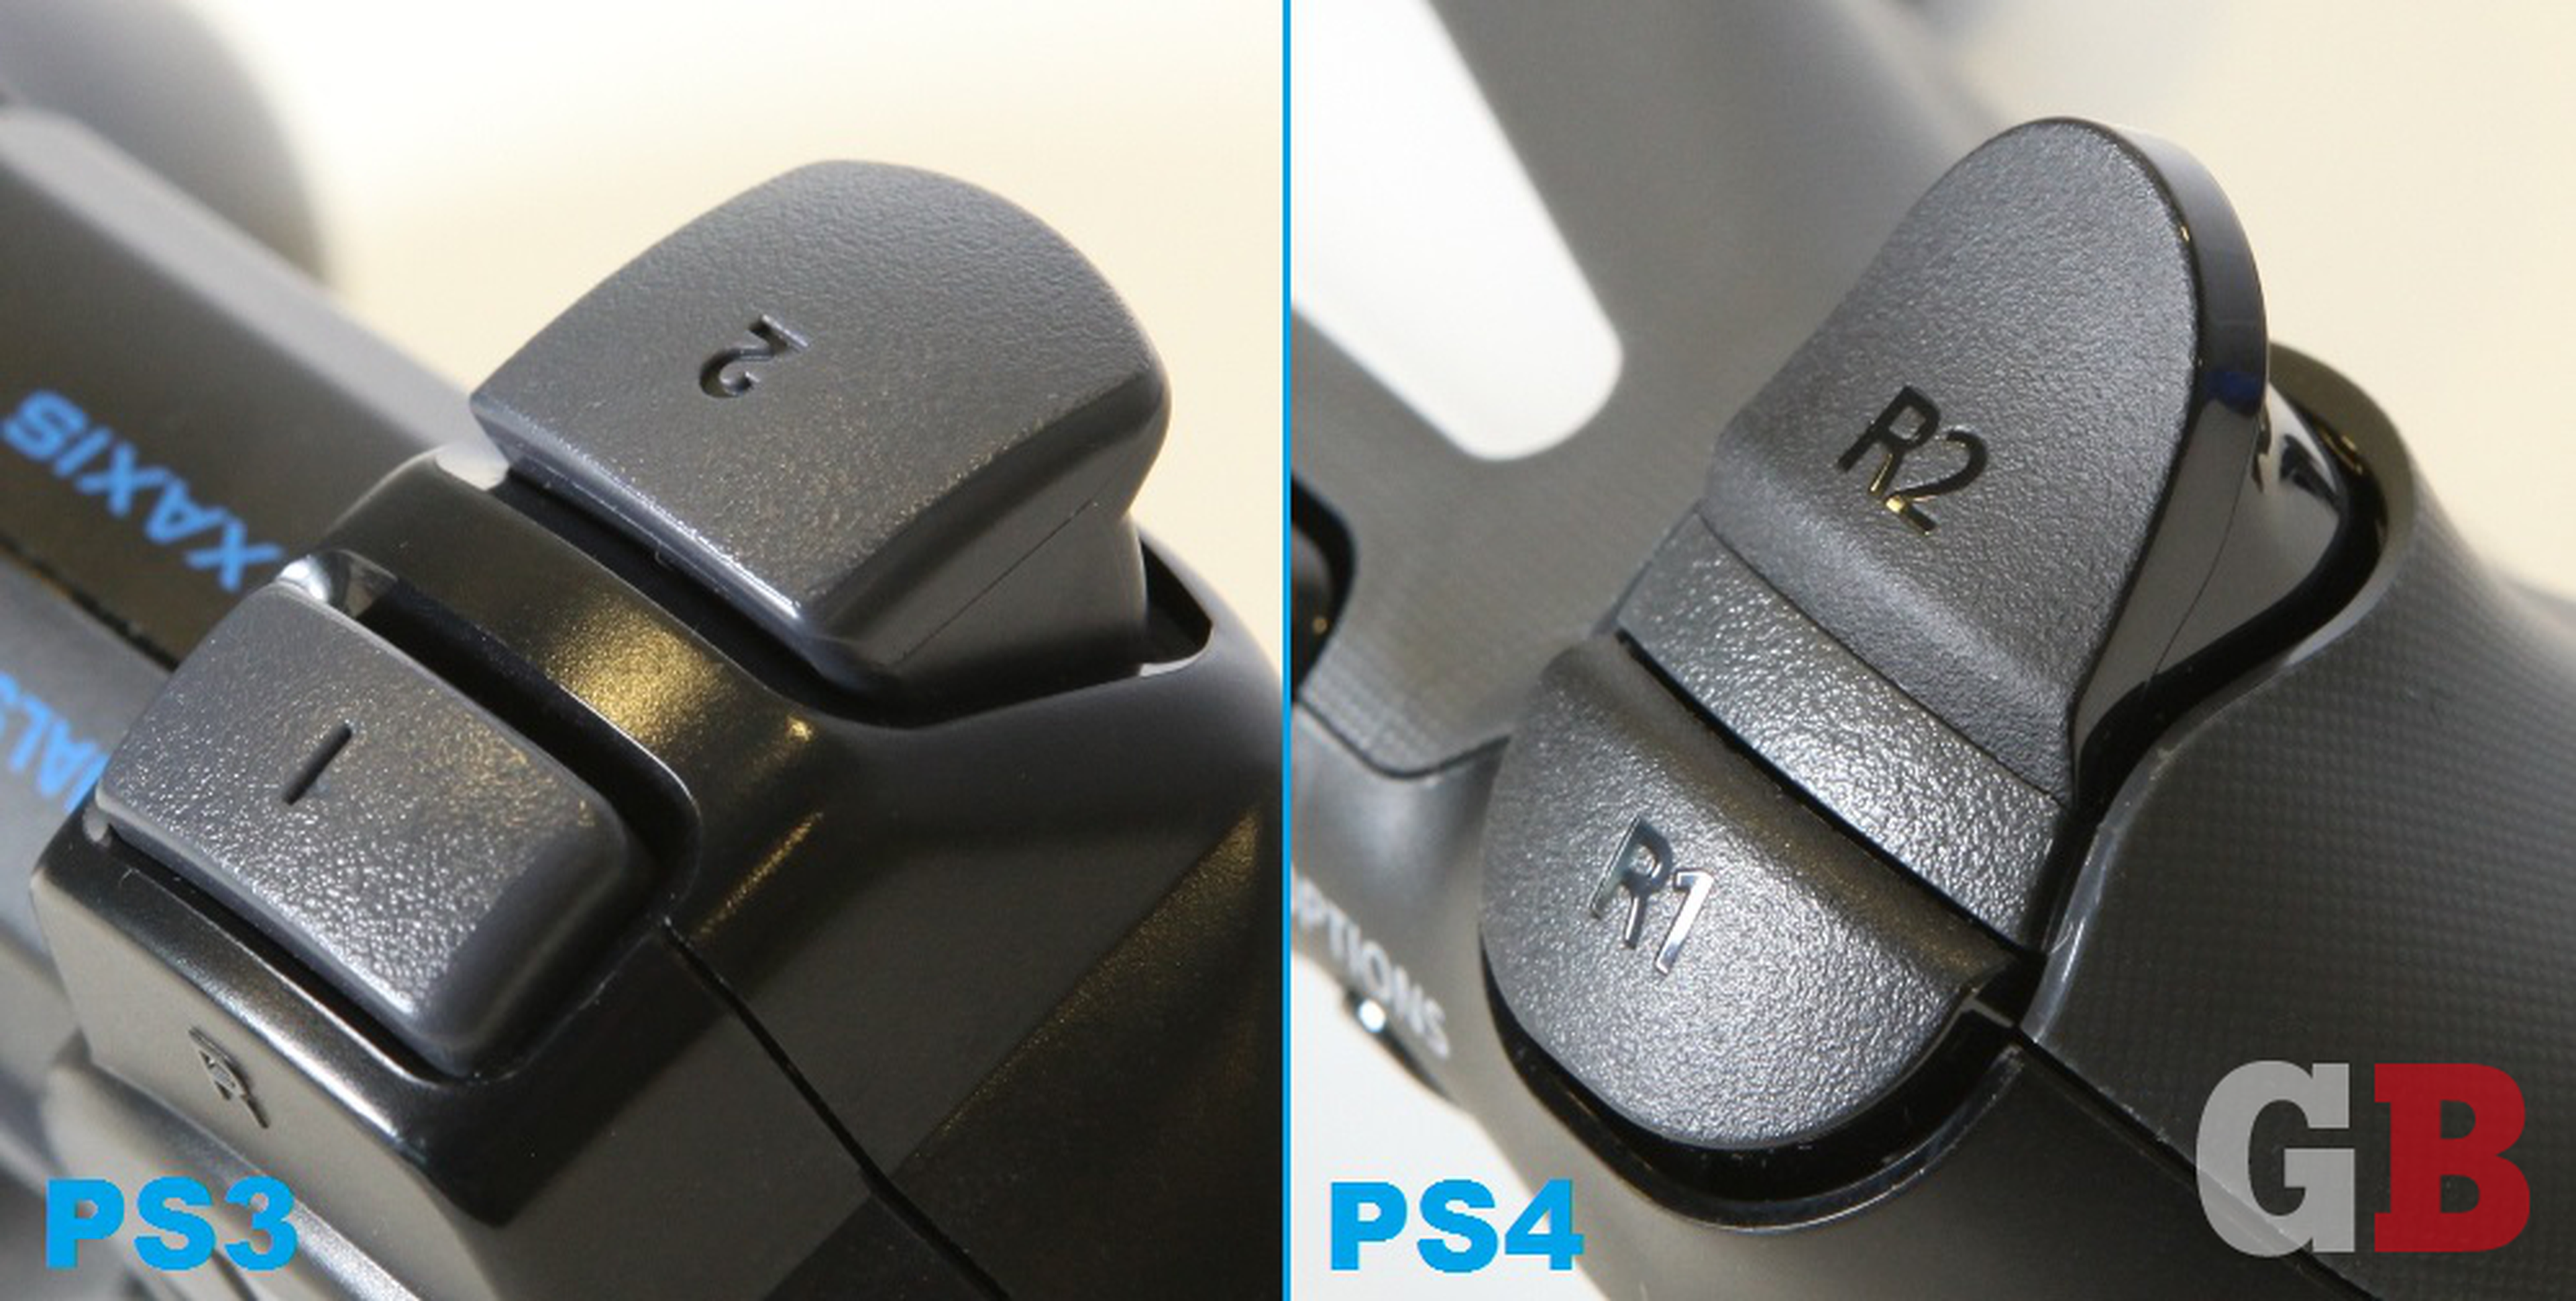 Comparativa entre el mando de PS3 y el de PS4